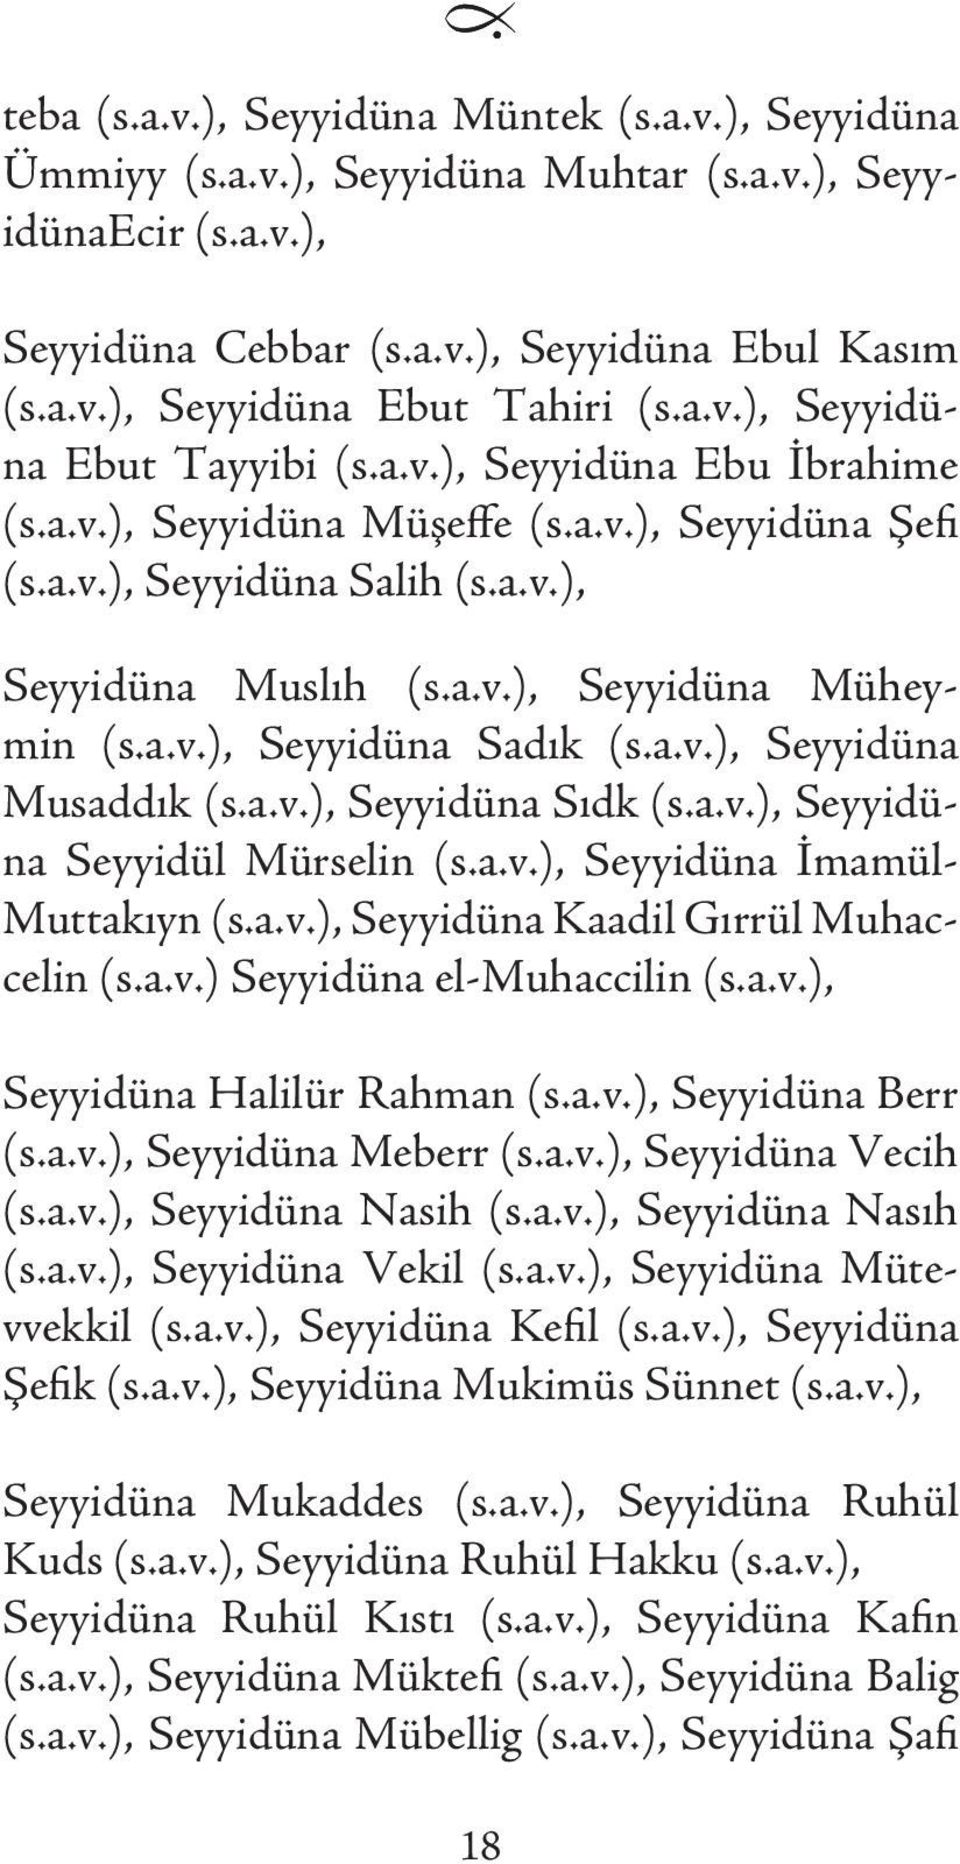 a.v.), Seyyidüna Sadık (s.a.v.), Seyyidüna Musaddık (s.a.v.), Seyyidüna Sıdk (s.a.v.), Seyyidüna Seyyidül Mürselin (s.a.v.), Seyyidüna İmamül- Muttakıyn (s.a.v.), Seyyidüna Kaadil Gırrül Muhaccelin (s.